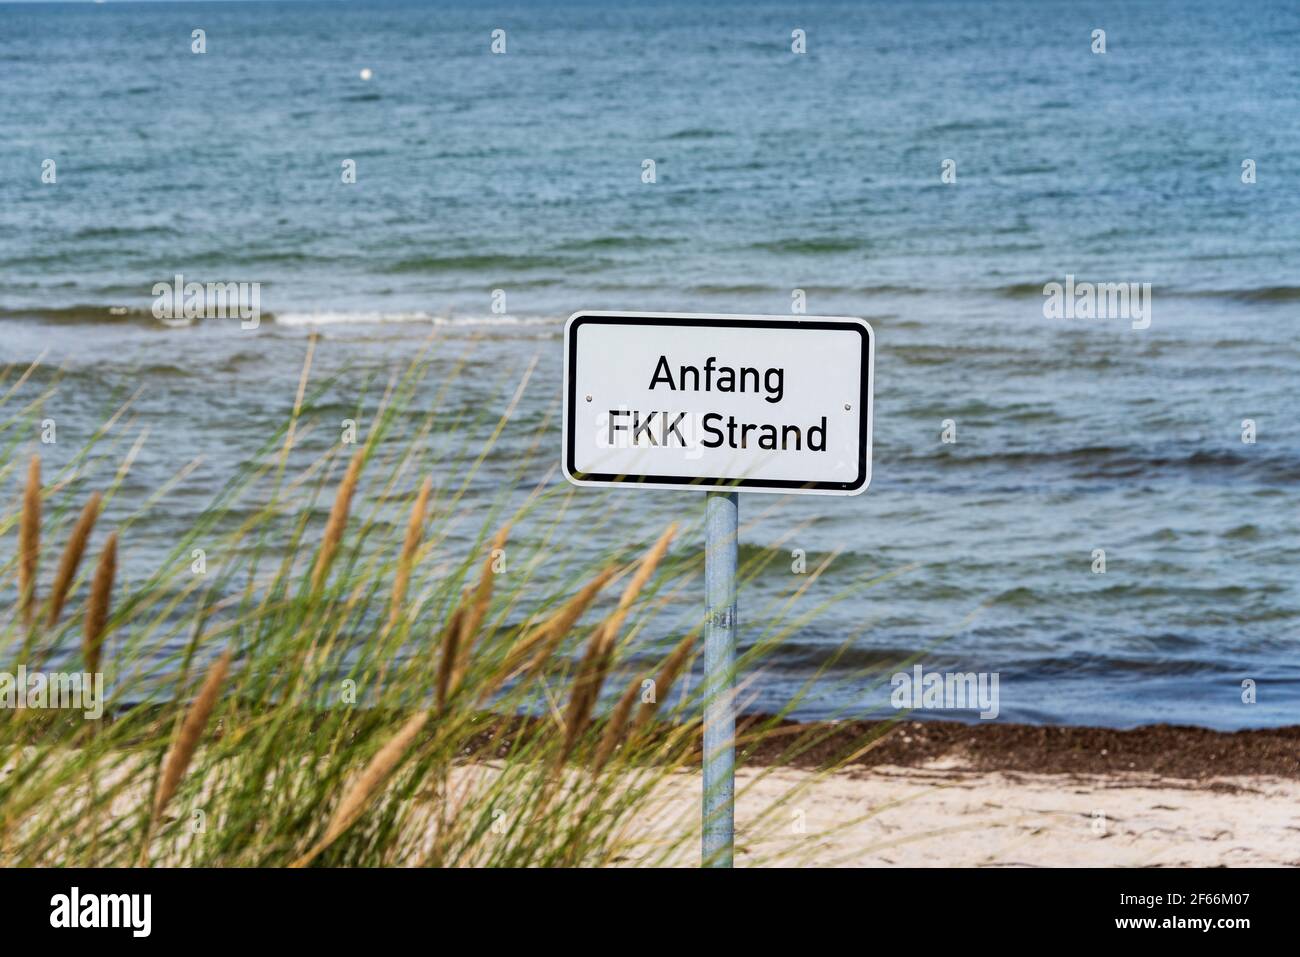 Schild 'Anfang FKK Strand' kennzeichnet den Beginn des Strandbereichs in dem Personen (Nudisten) Das Baden und Sonnen ohne Kleidung erlaubt ist Foto Stock